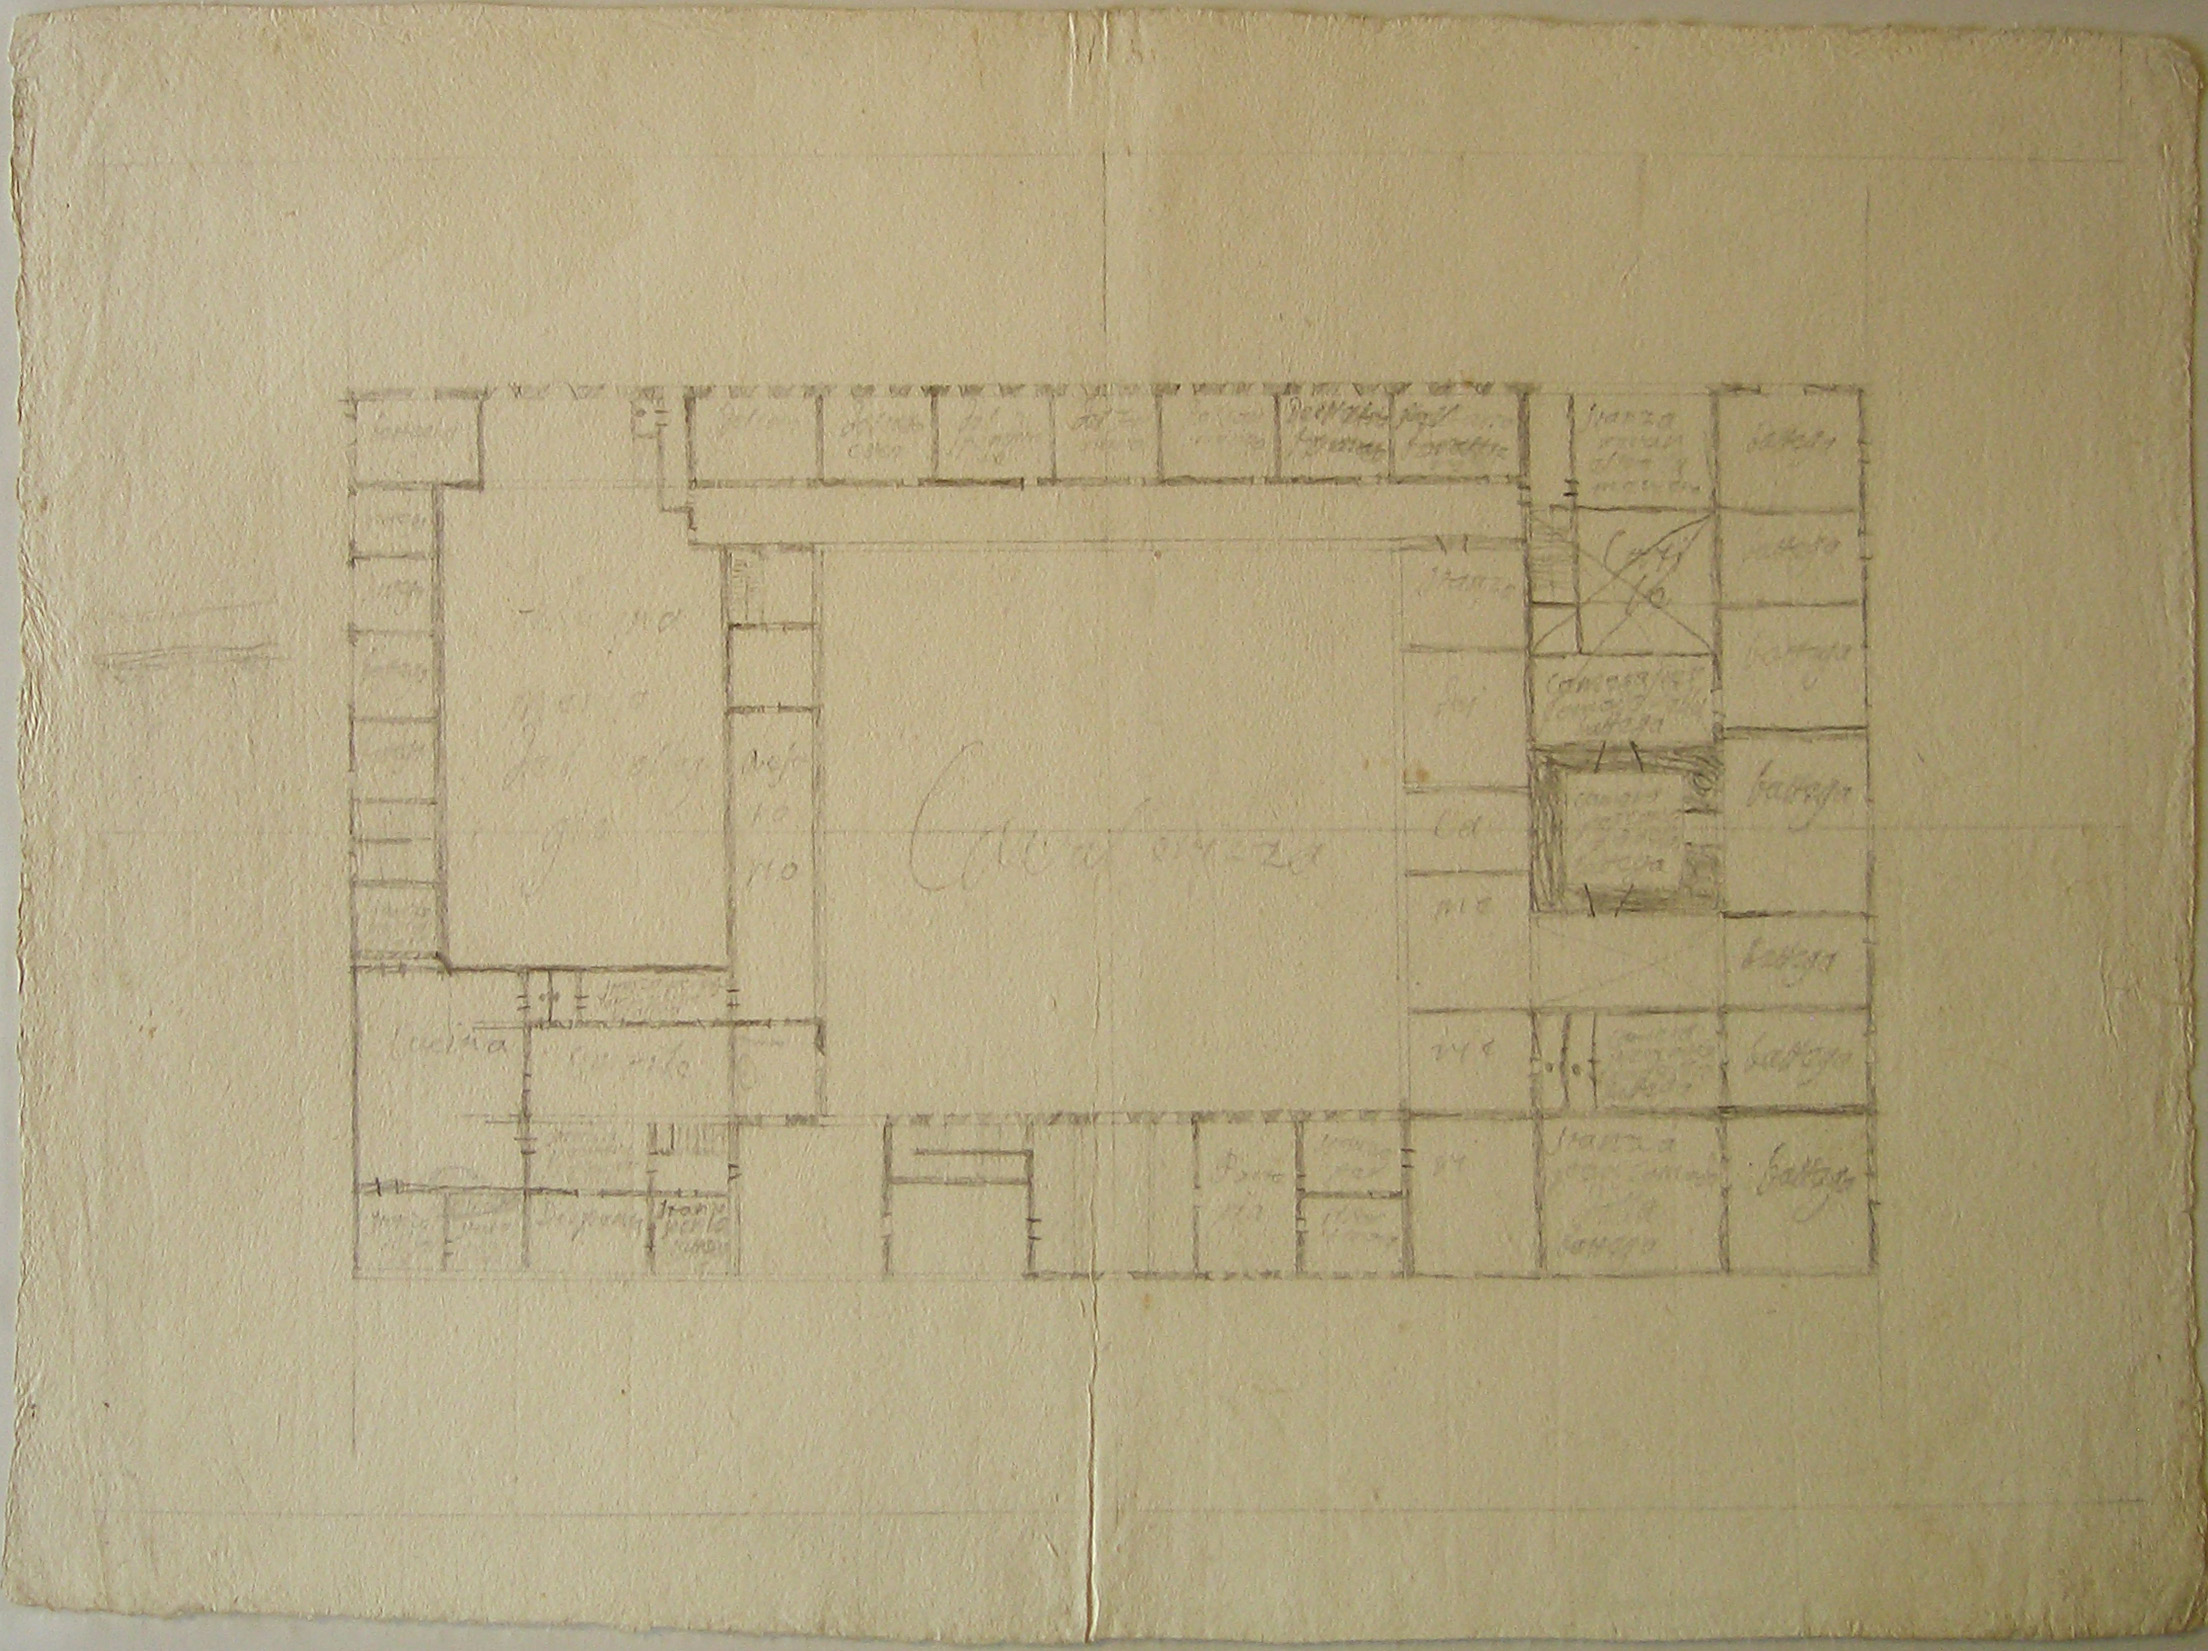 Progetto per un collegio: pianta del piano terra (disegno architettonico, opera isolata) di Cagnola Luigi (sec. XVIII)